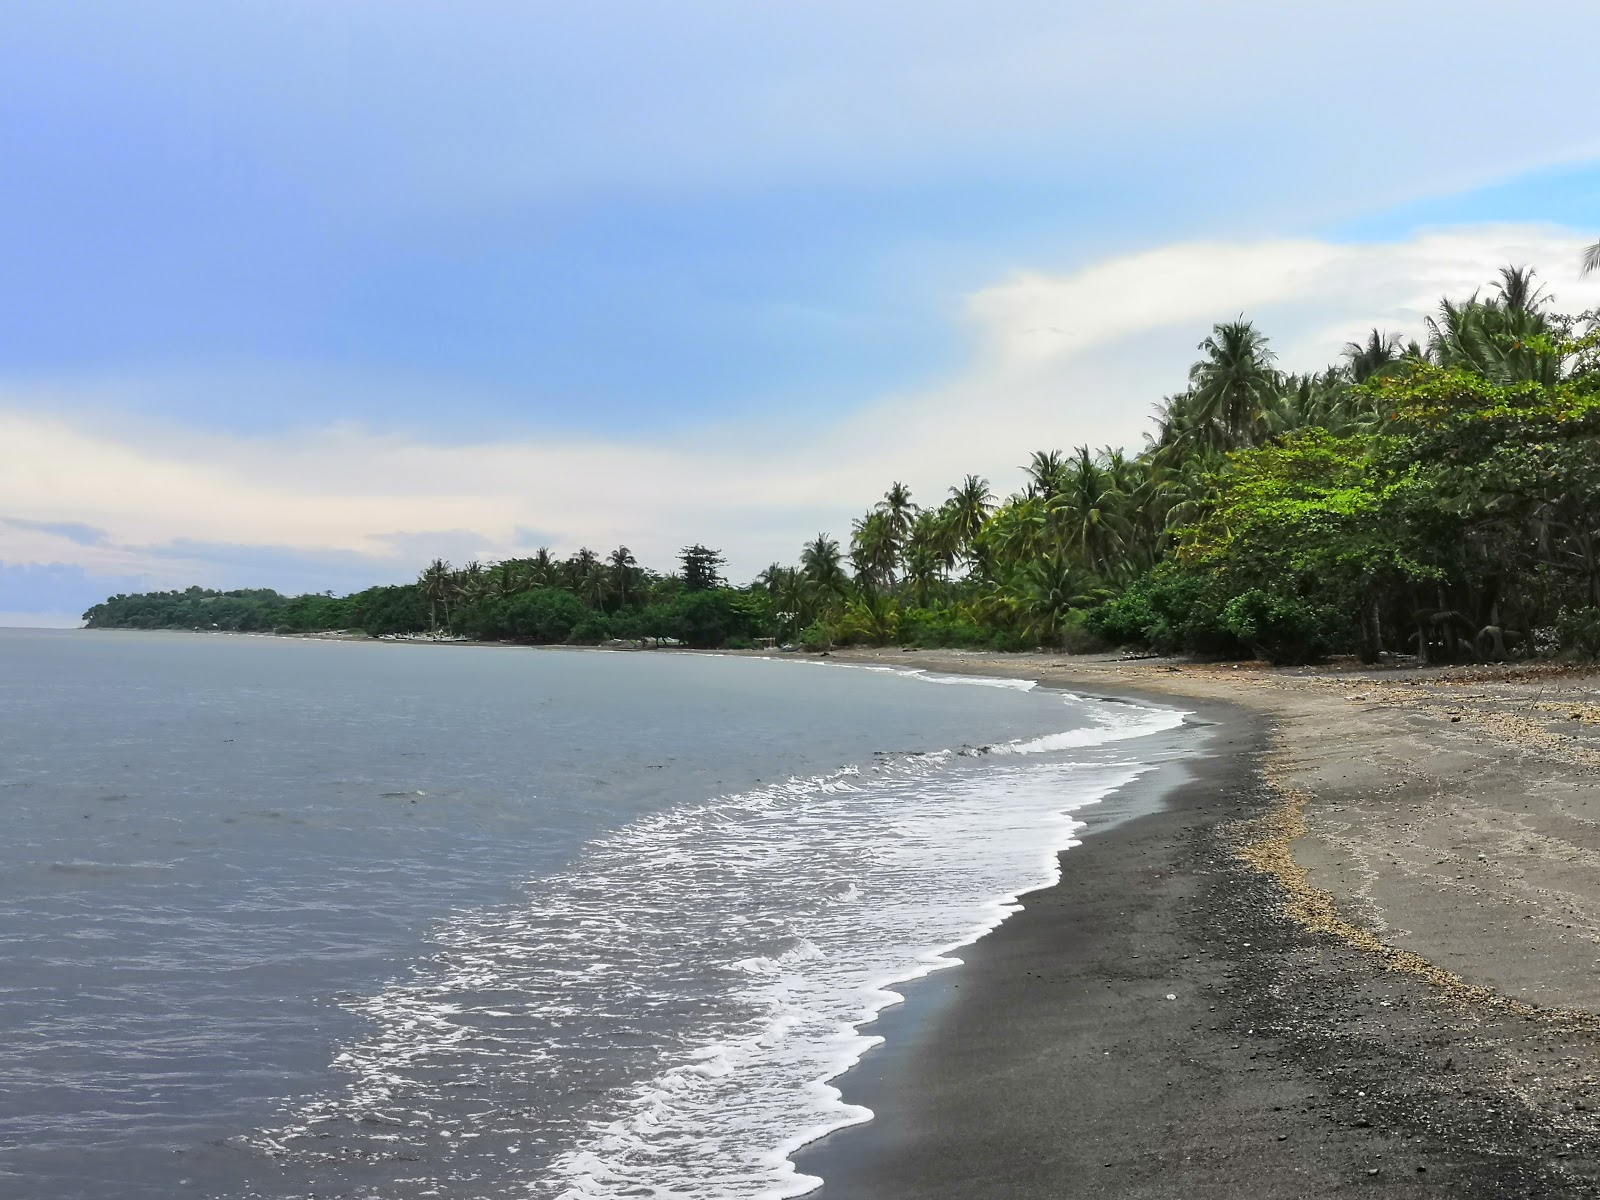 Fotografie cu Montong Pal Beach cu o suprafață de nisip maro